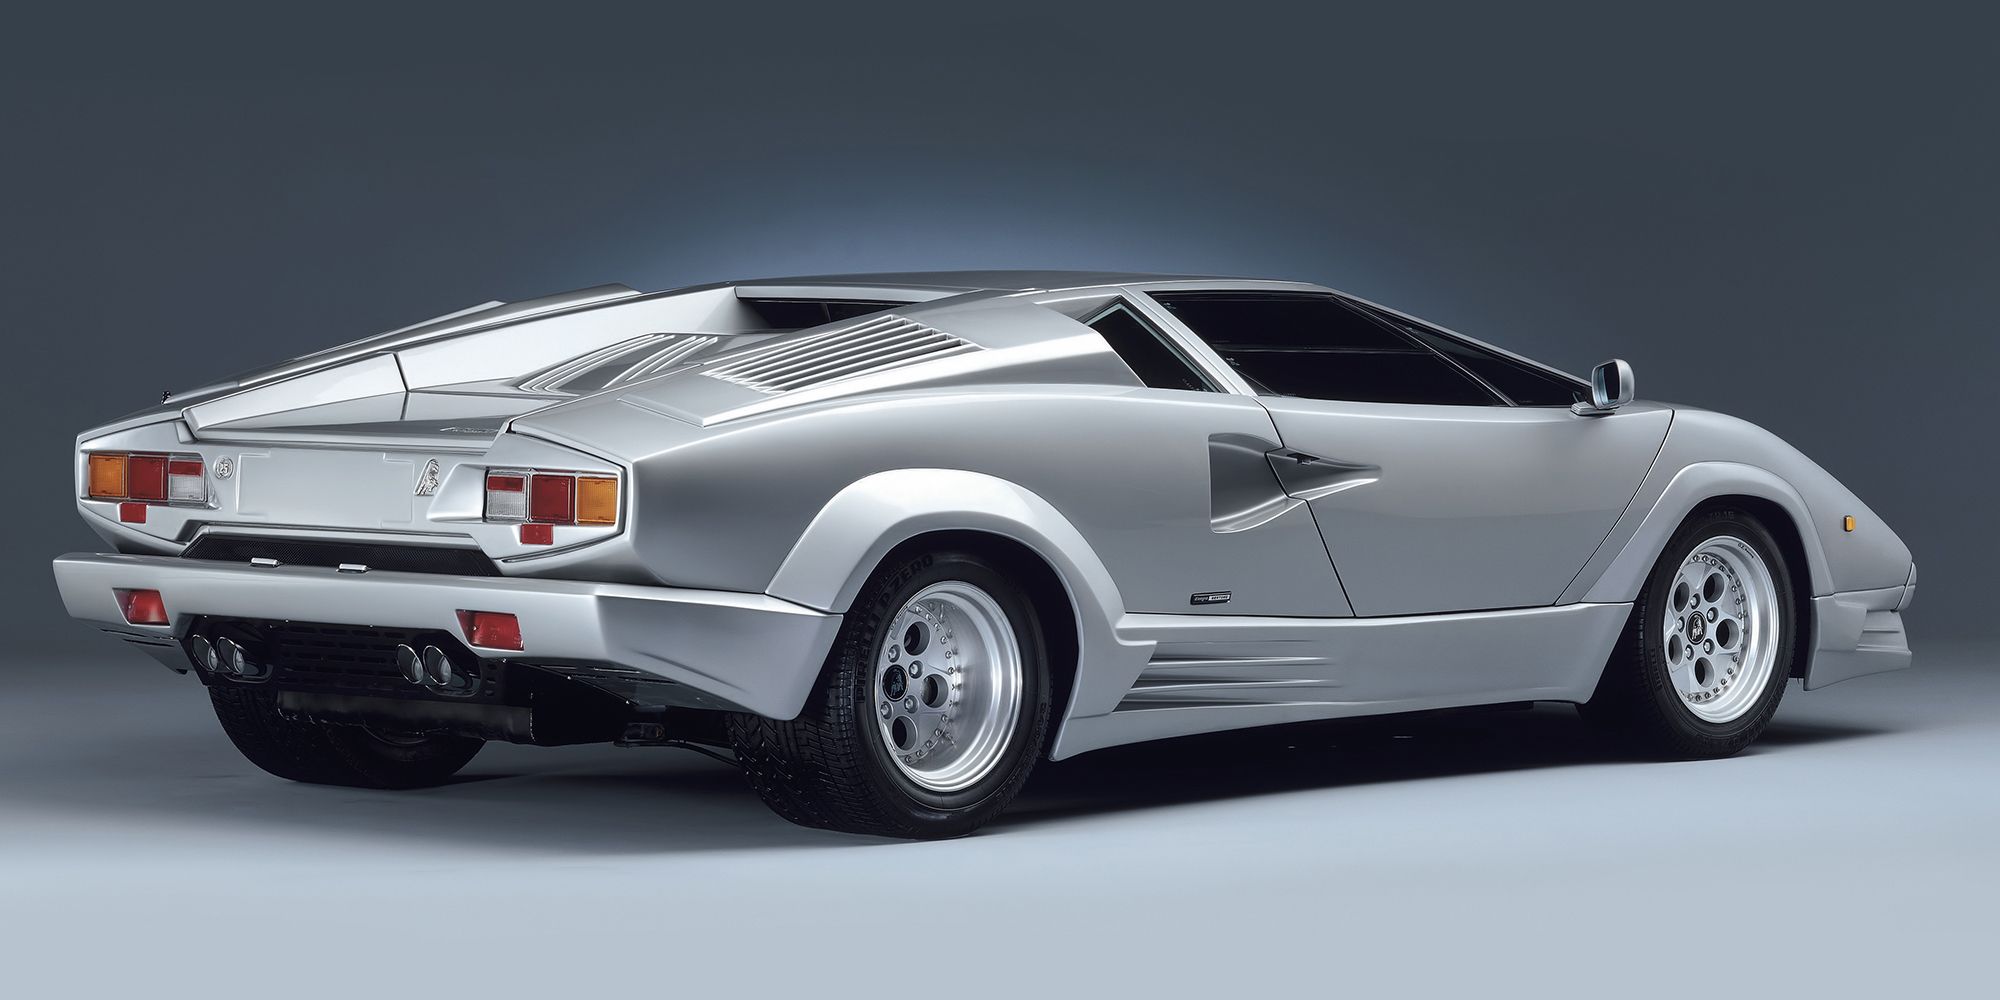 Rear View of a Silver Lamborghini Countach 25th Anniversary